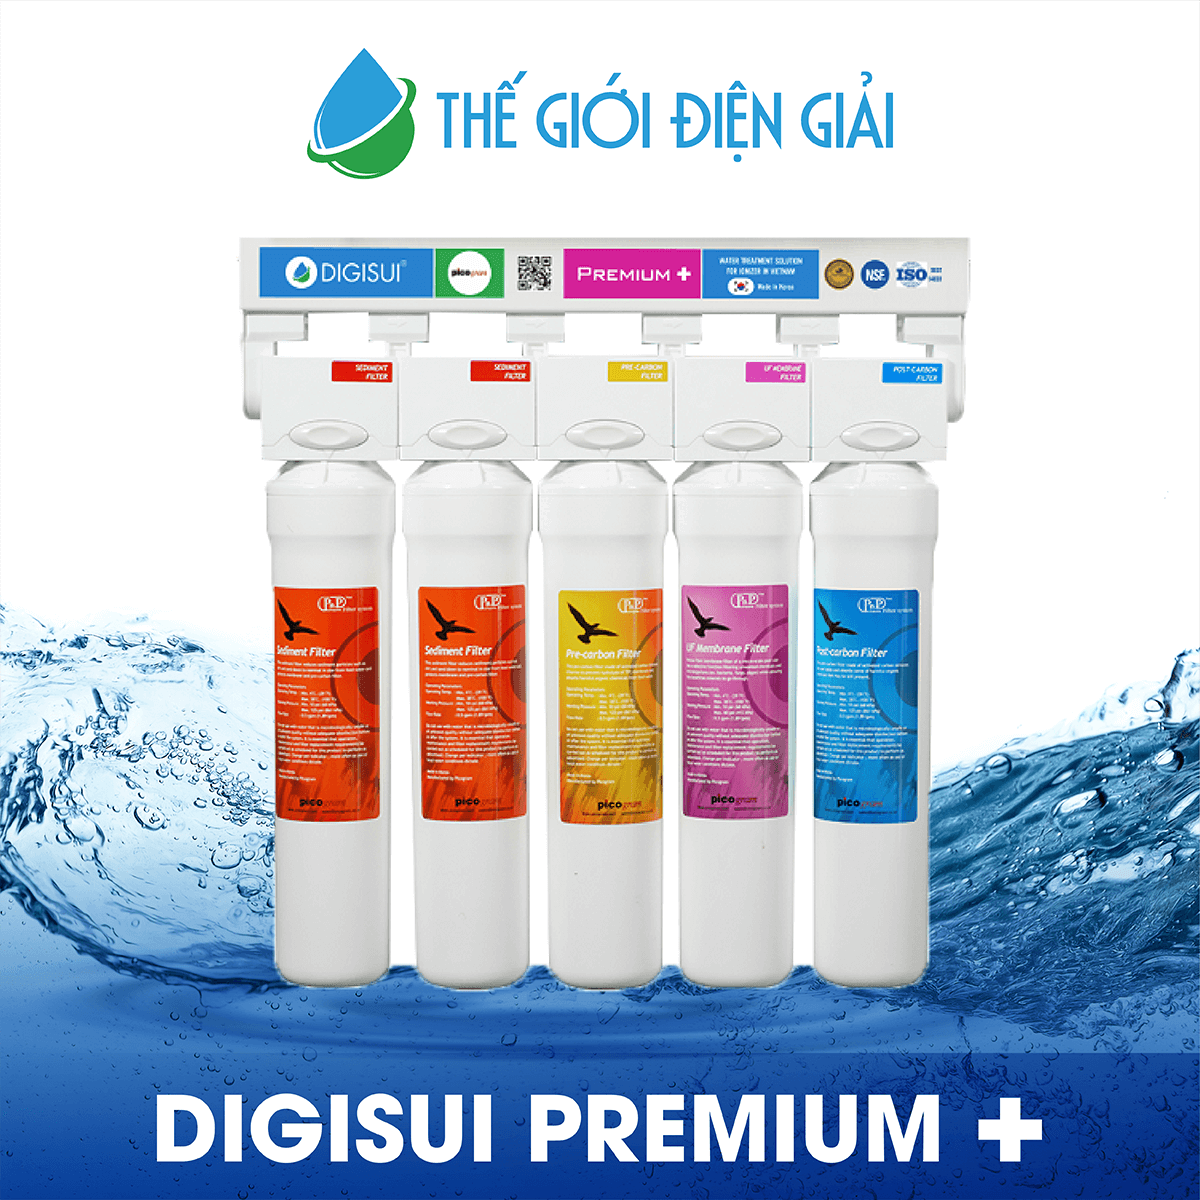  Máy lọc nước DigiSui Premium + được nghiên cứu dành riêng cho Việt Nam